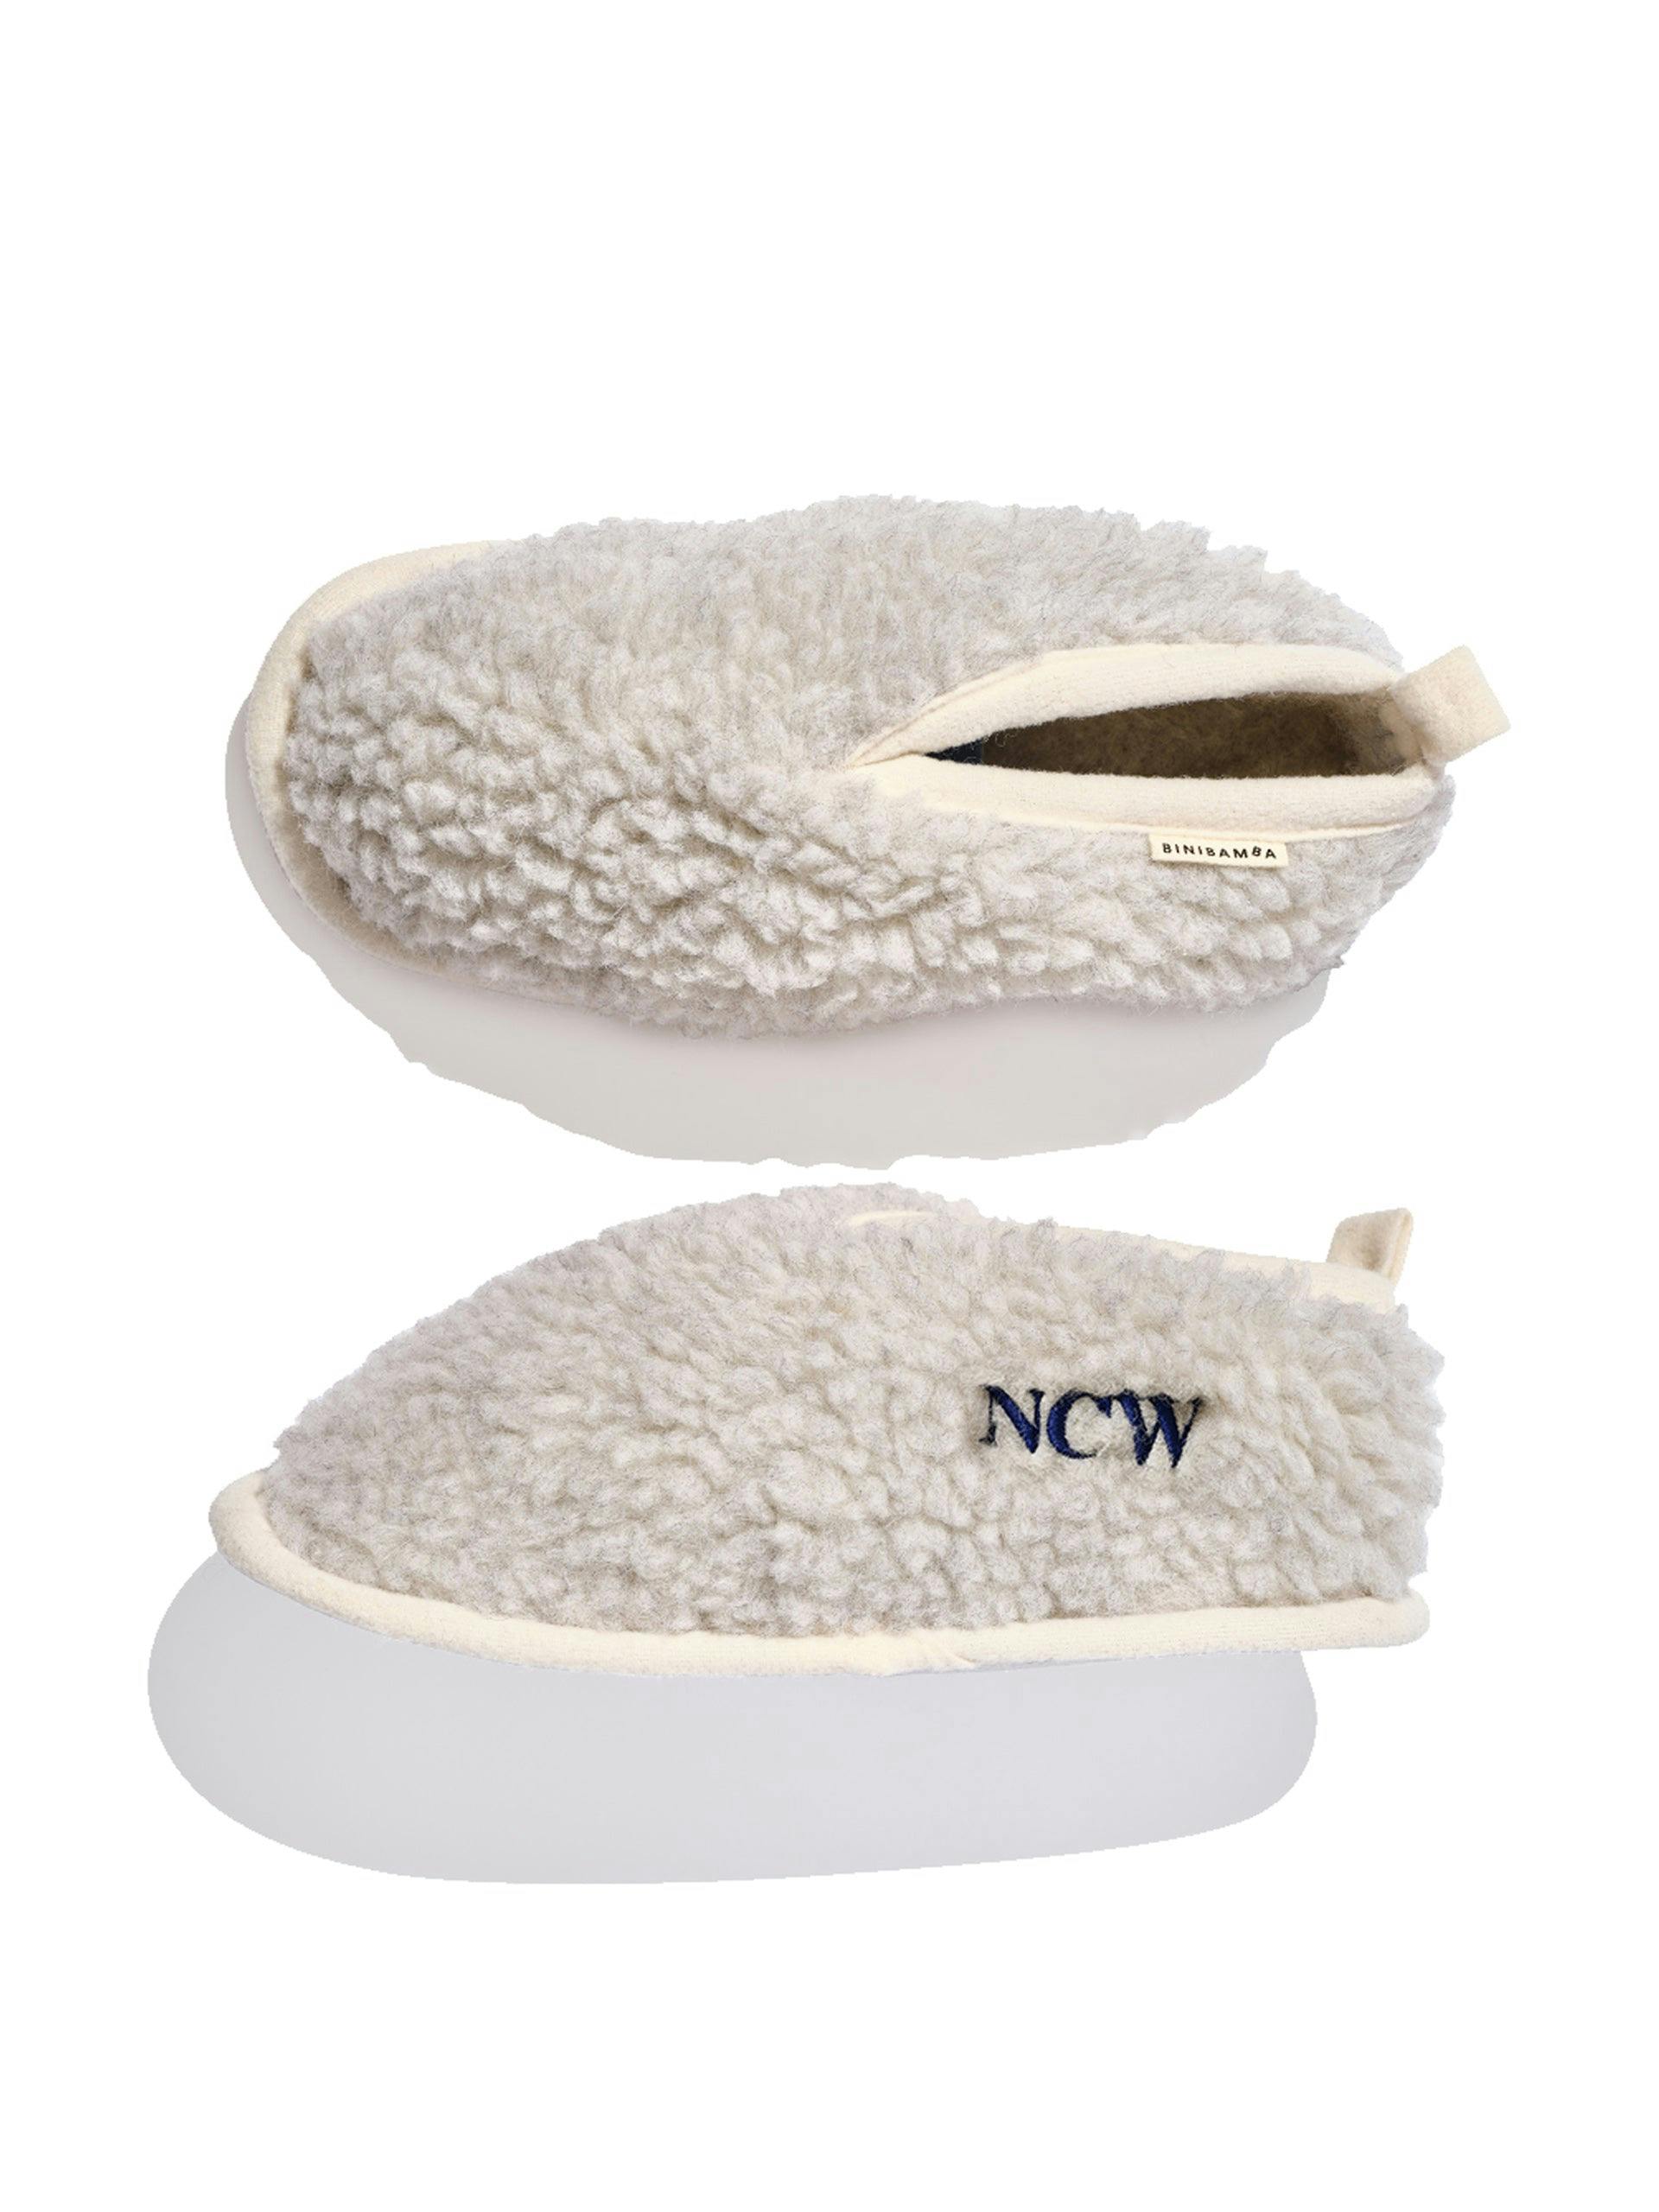 Personalised merino wool slippers